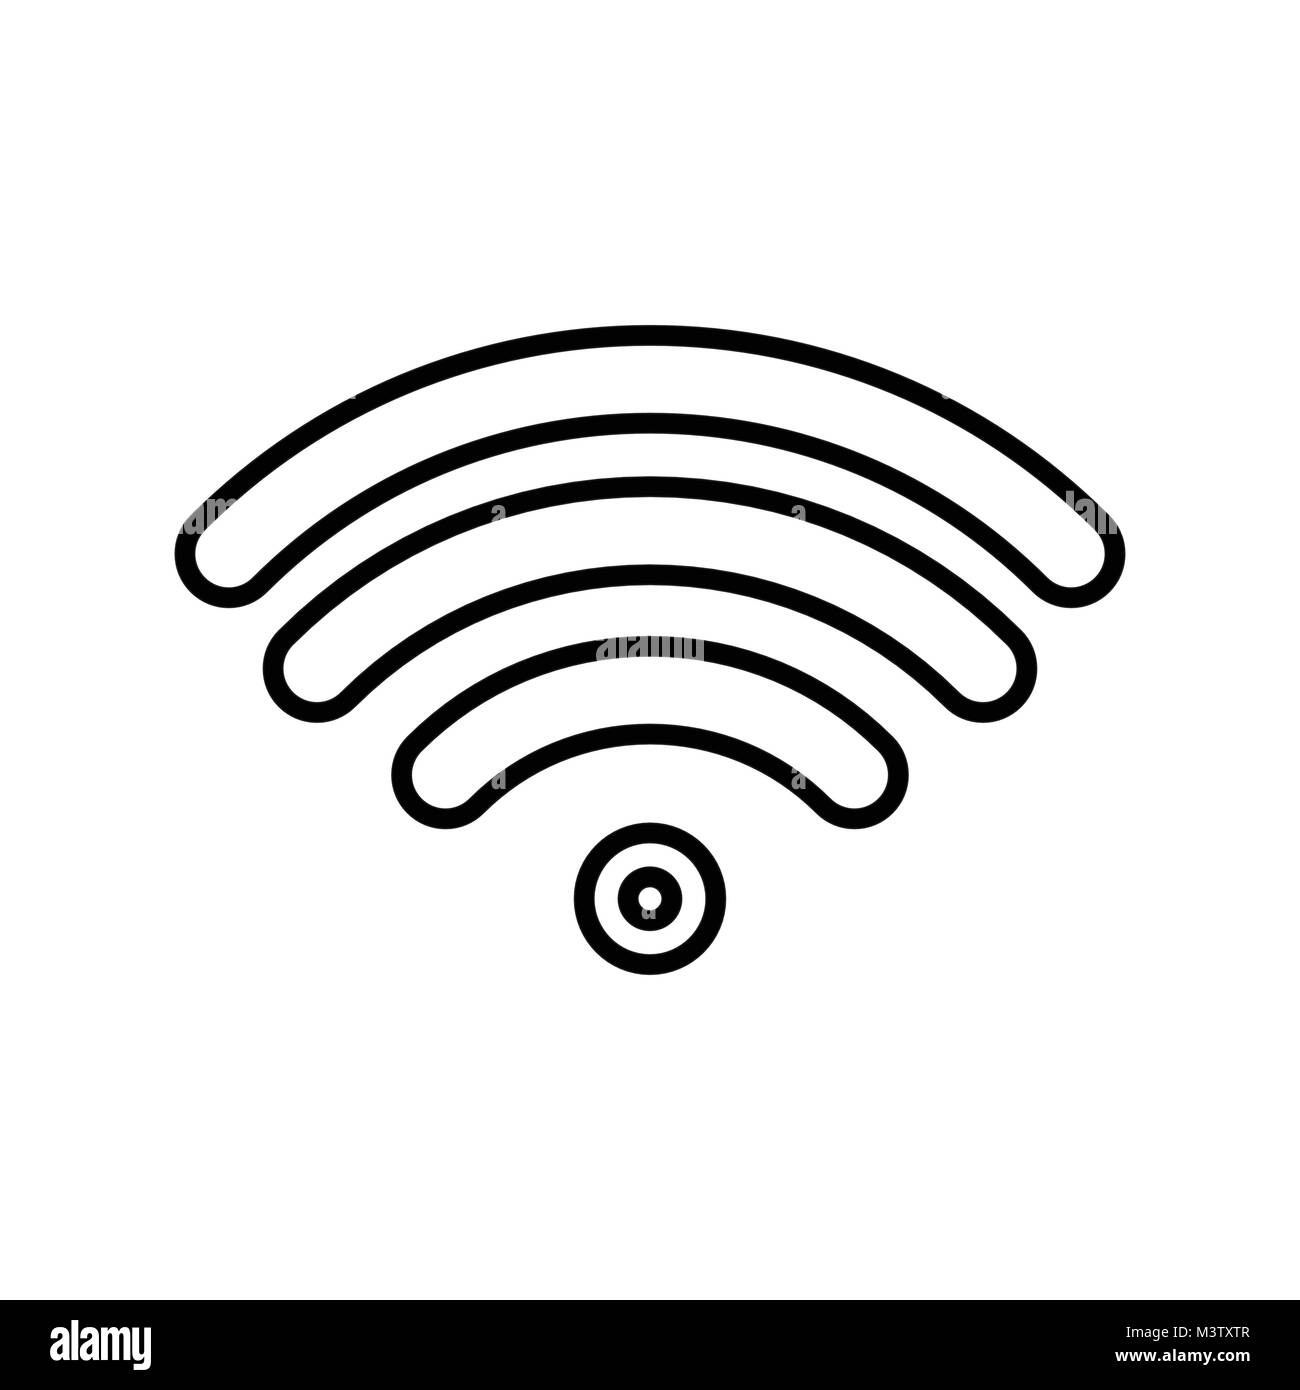 Wifi icon with circluar center Stock Vector